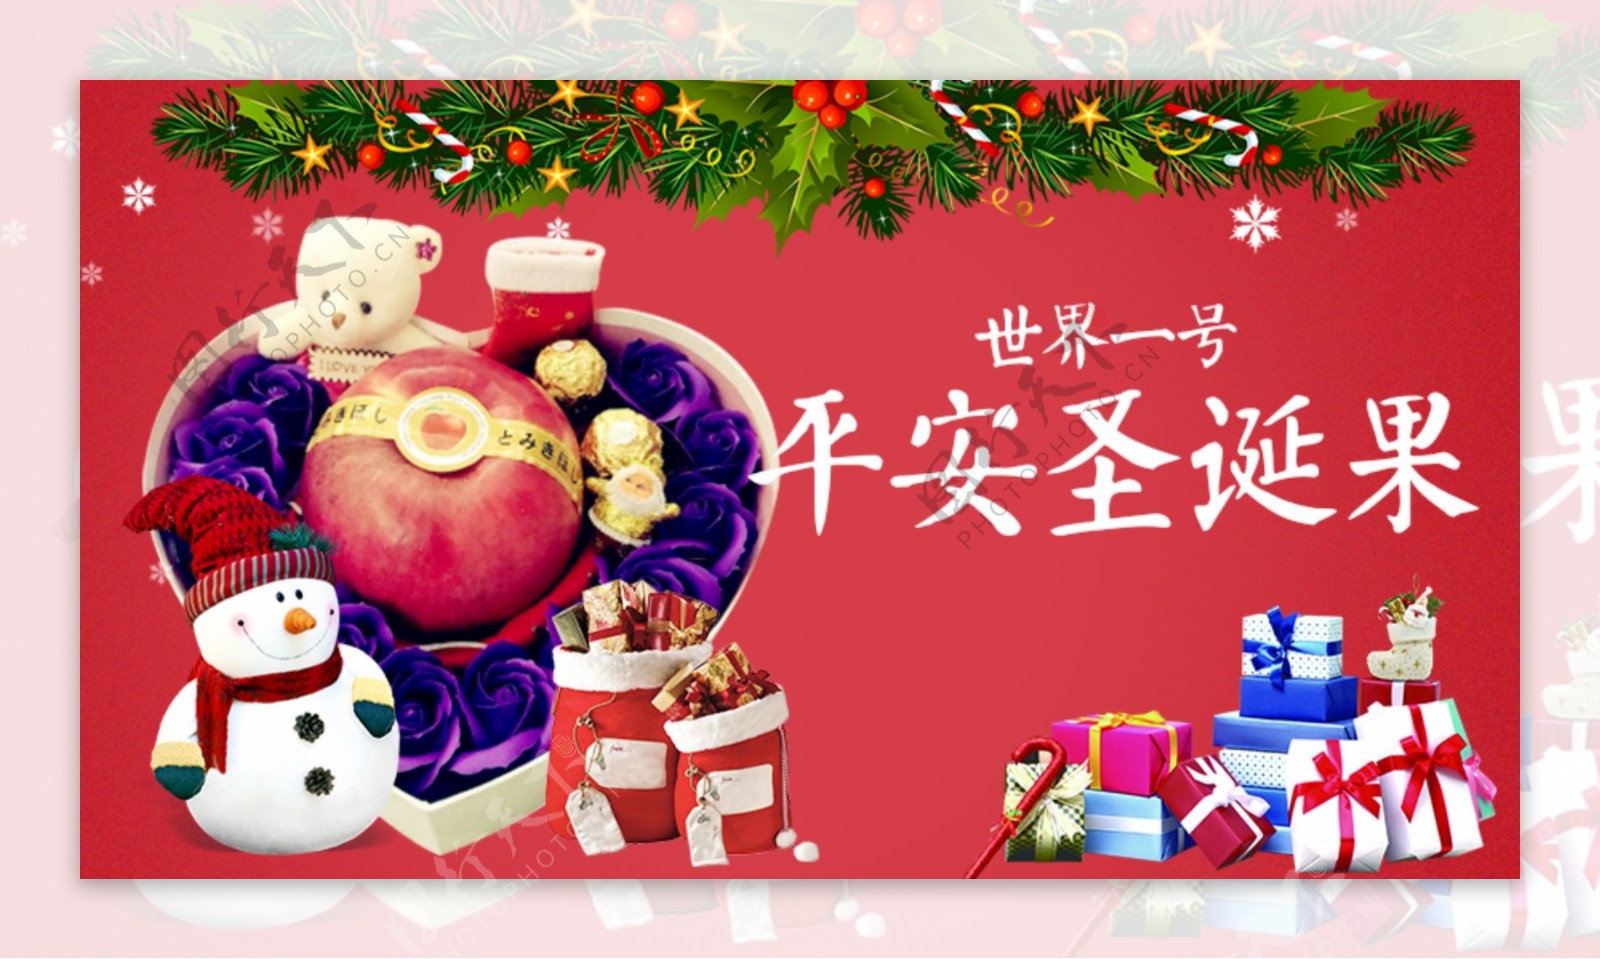 苹果壁纸下载-圣诞节苹果动态壁纸- macw下载站